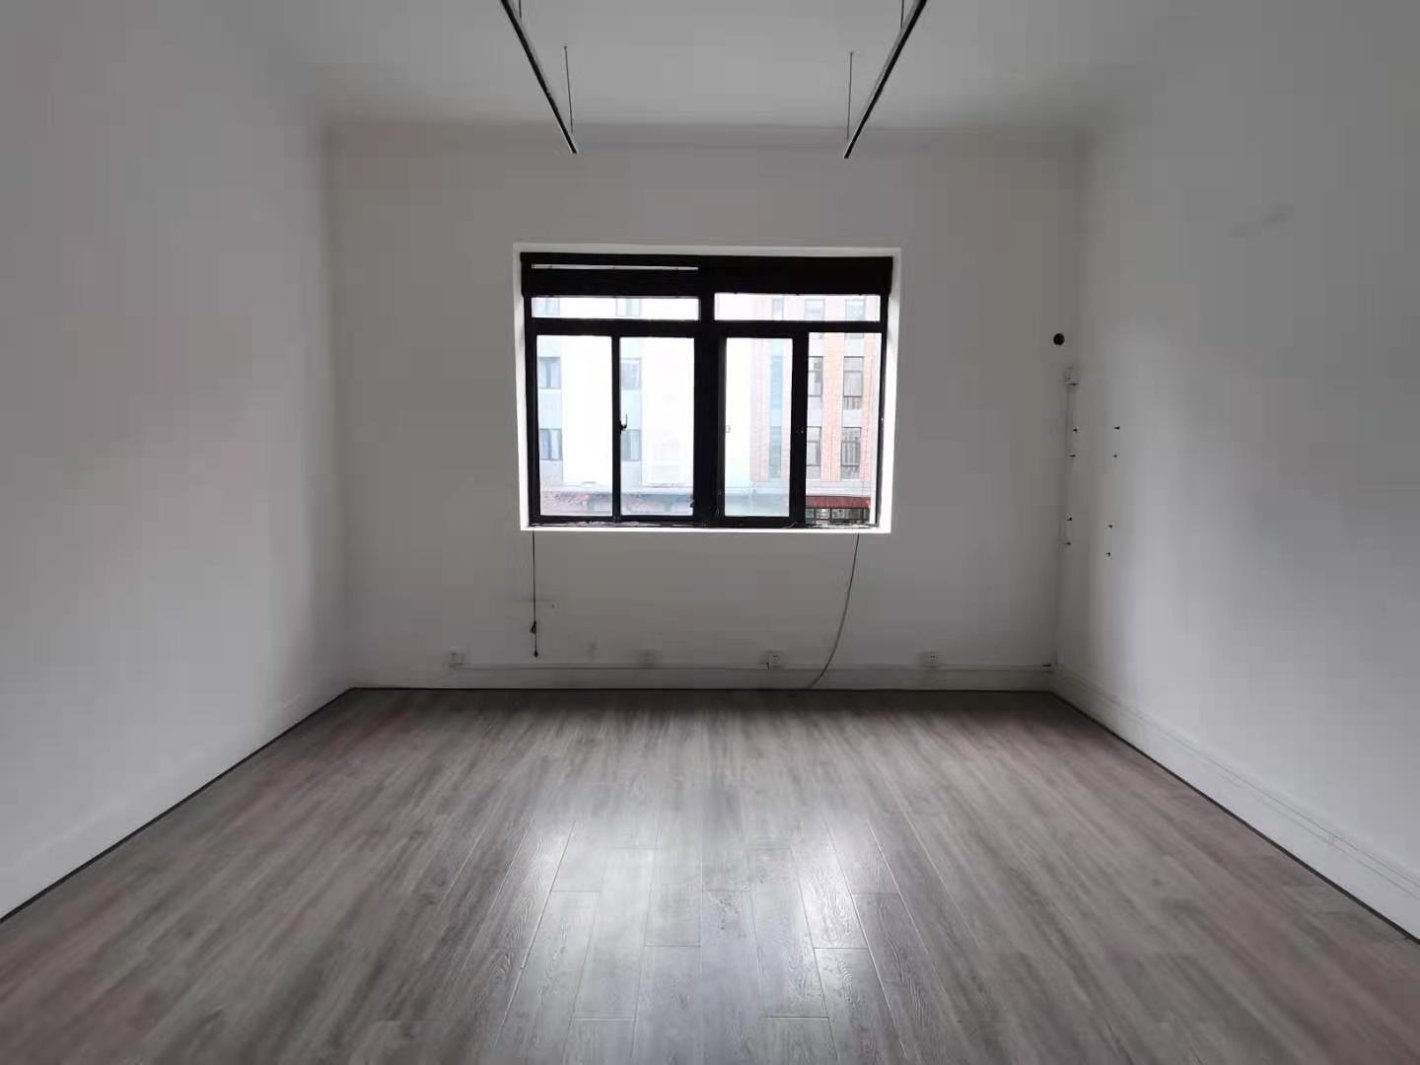 越界·X2创意空间二期39平米办公室出租-租金价格5.68元/m²/天